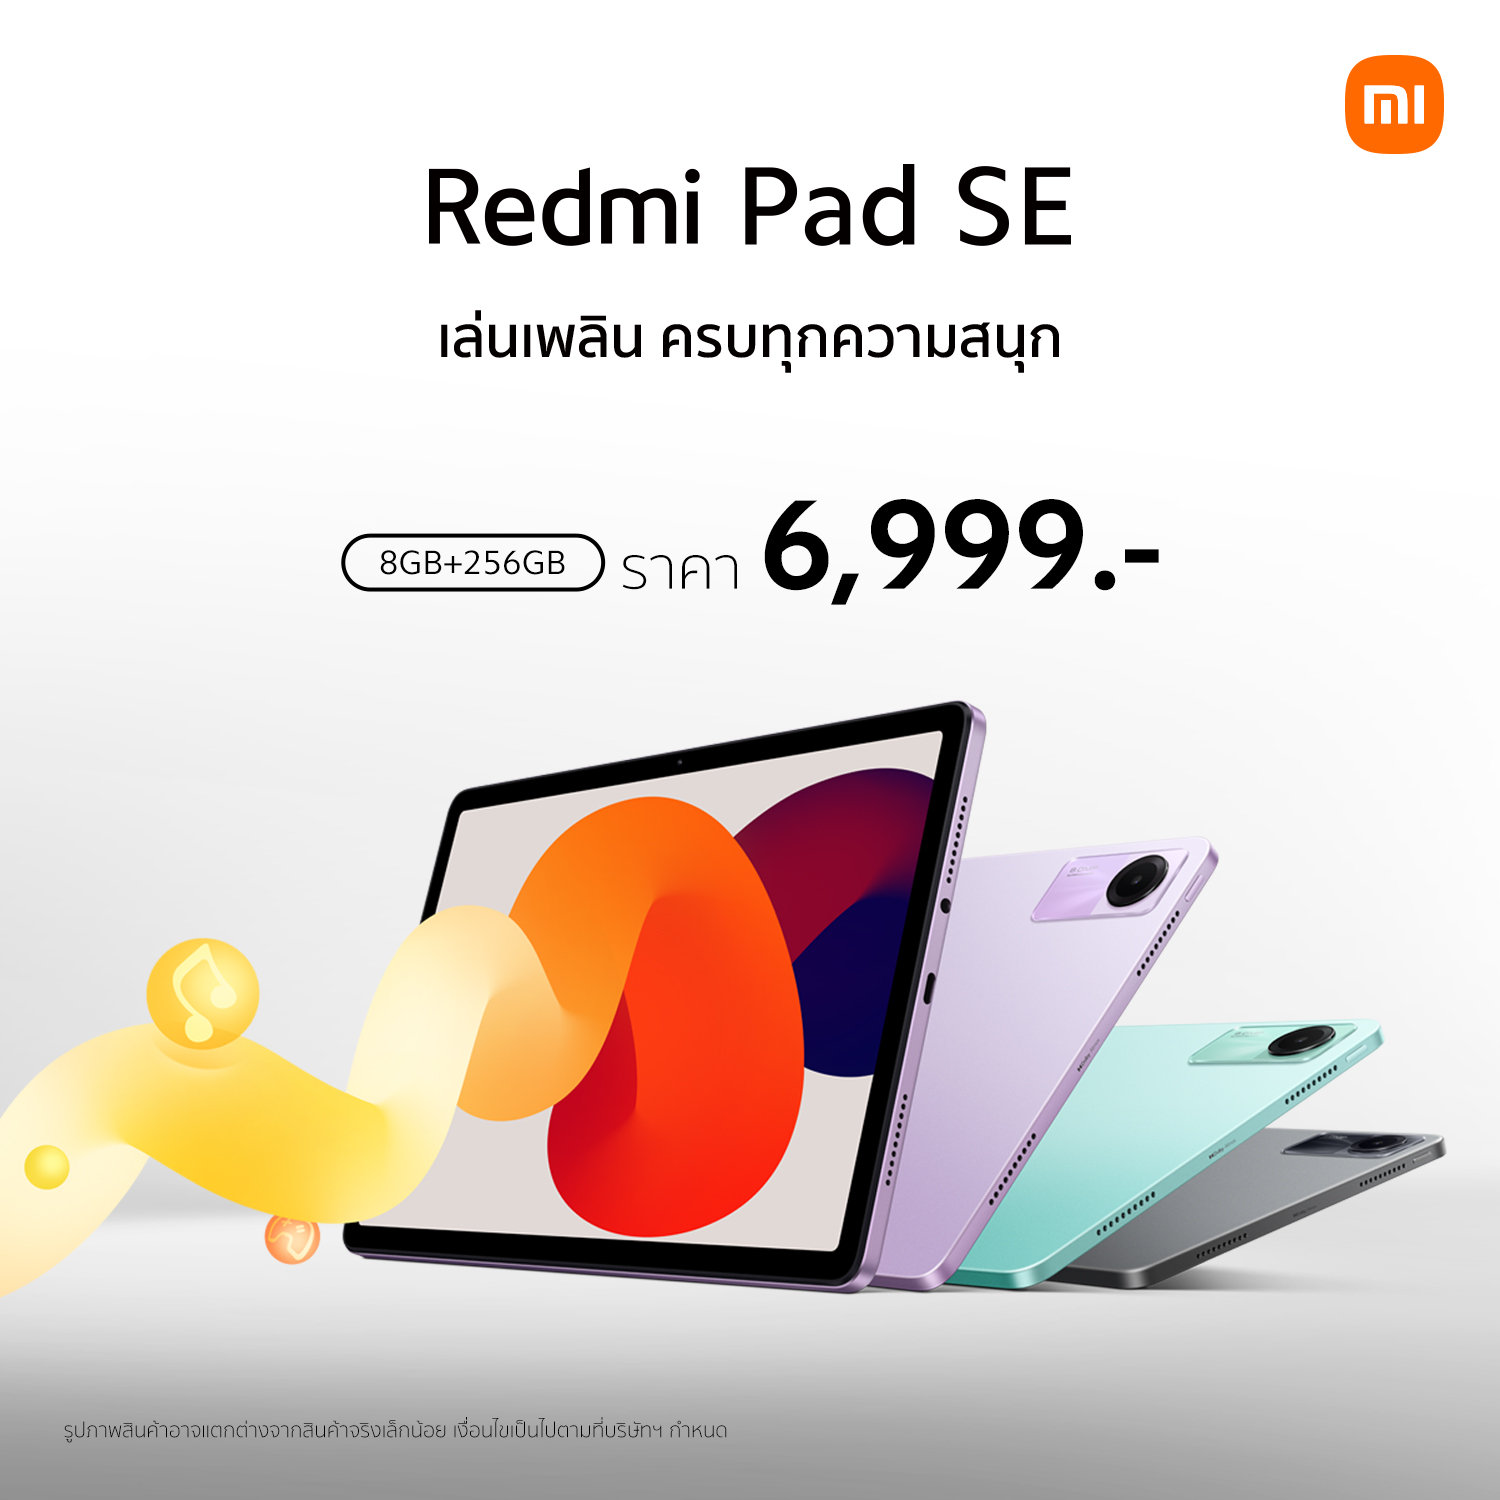 Redmi Pad SE ความจุใหม่ใหญ่กว่าเดิม 8GB+256GB วางจำหน่ายอย่างเป็นทางการในราคาเพียง 6,999 บาท